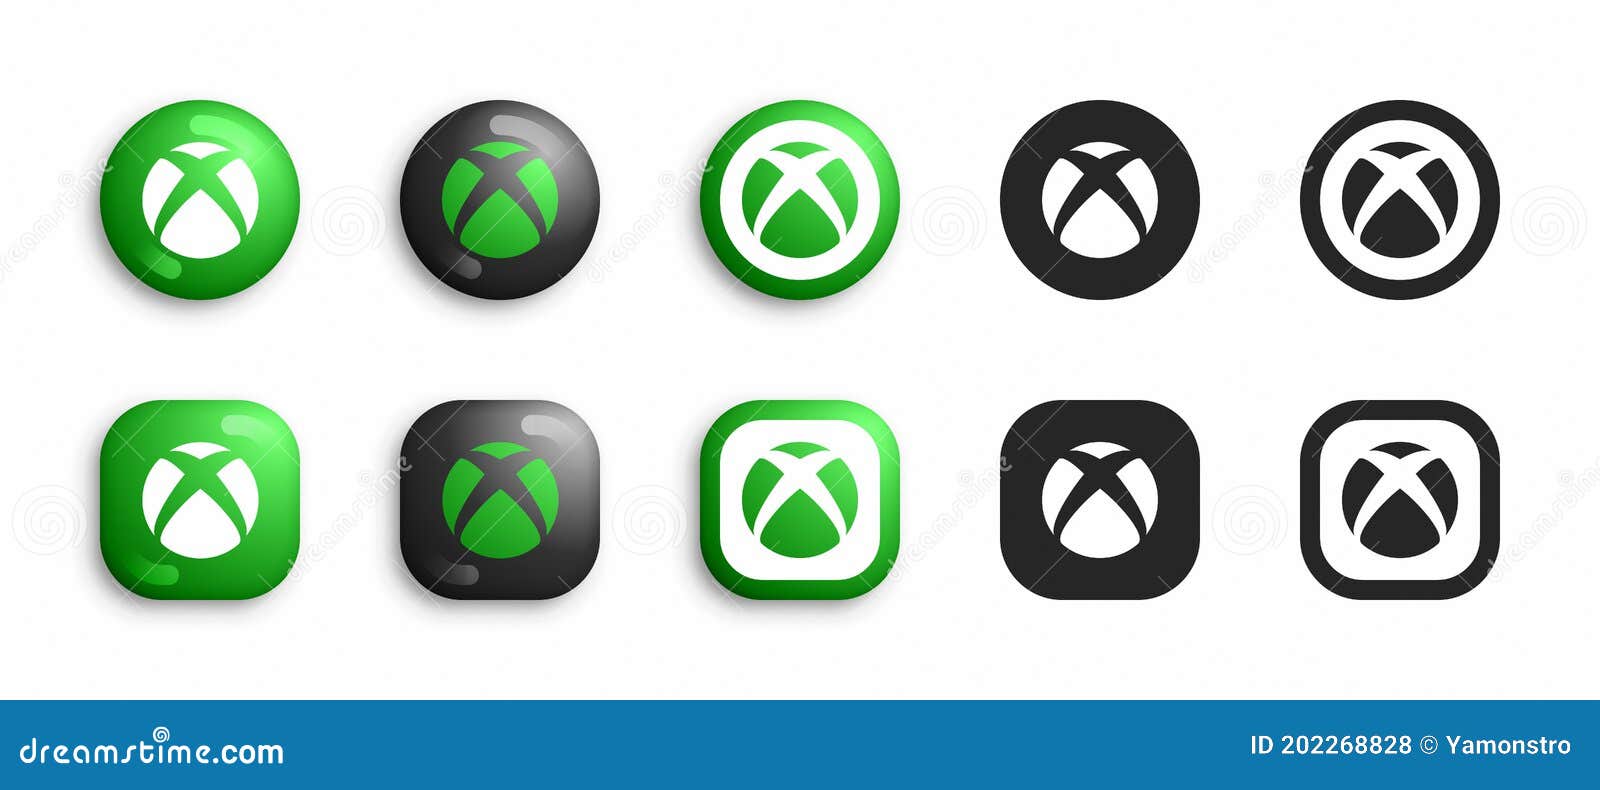 Microsoft Xbox - Với sự uy tín và thương hiệu lớn, Microsoft Xbox là sự lựa chọn hàng đầu của rất nhiều game thủ trên toàn thế giới. Nếu bạn muốn trải nghiệm những trò chơi tuyệt vời nhất, hãy đến với Microsoft Xbox.